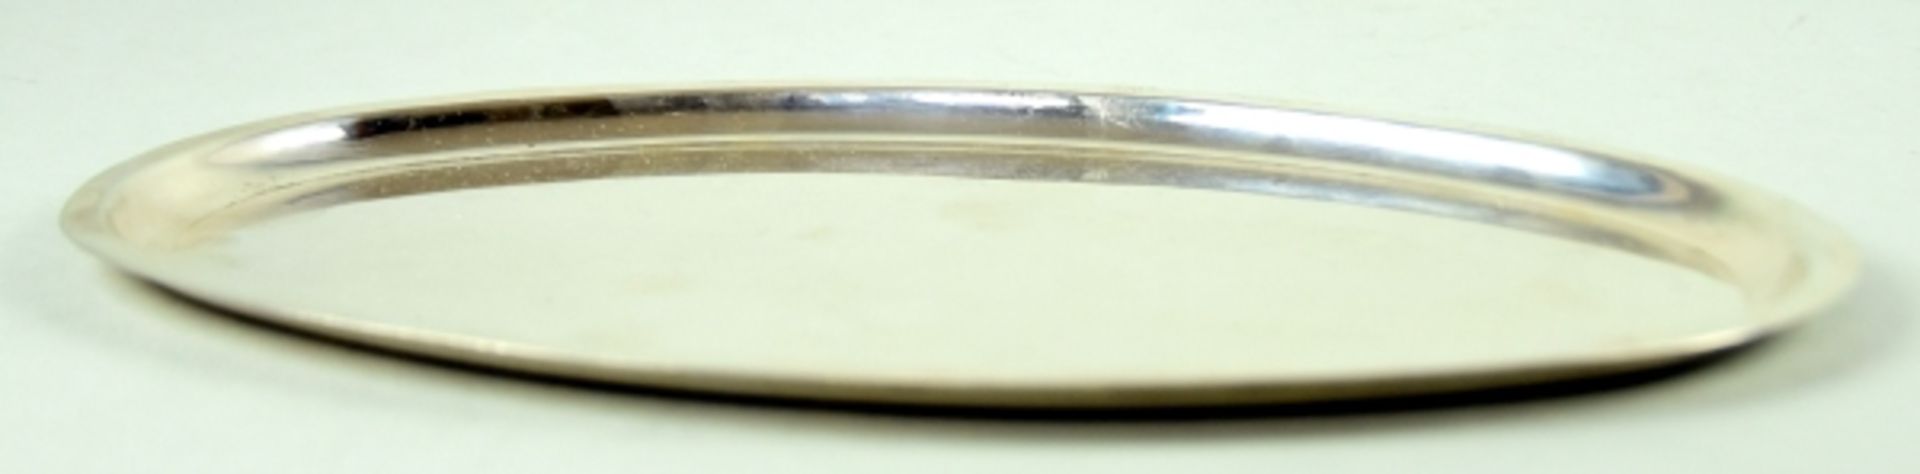 TABLETT oval, schlichtes Design, Silber 925, 186gr, 23,5x15cm- - -23.00 % buyer's premium on the - Bild 2 aus 3